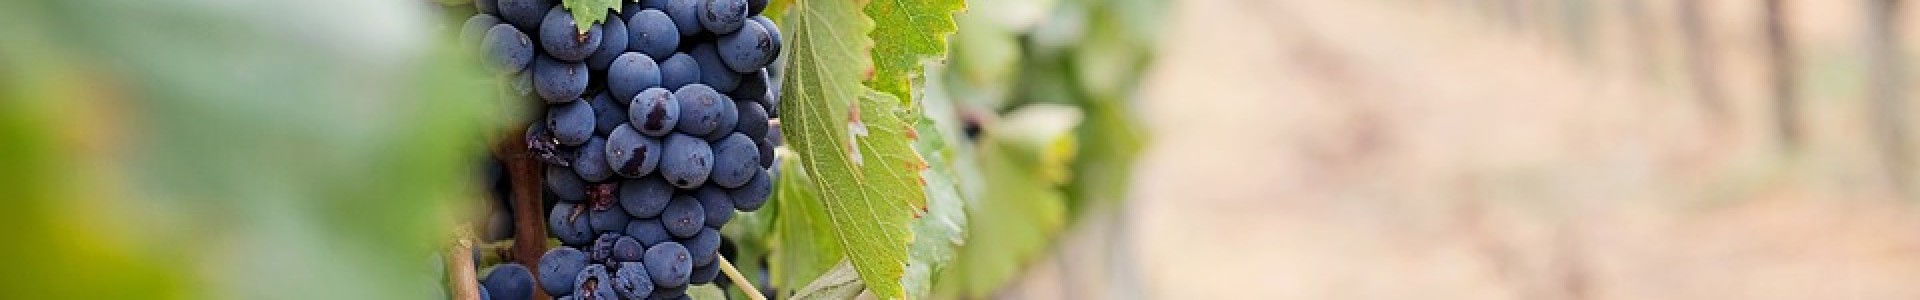 La sostenibilità nelle imprese del vino italiano